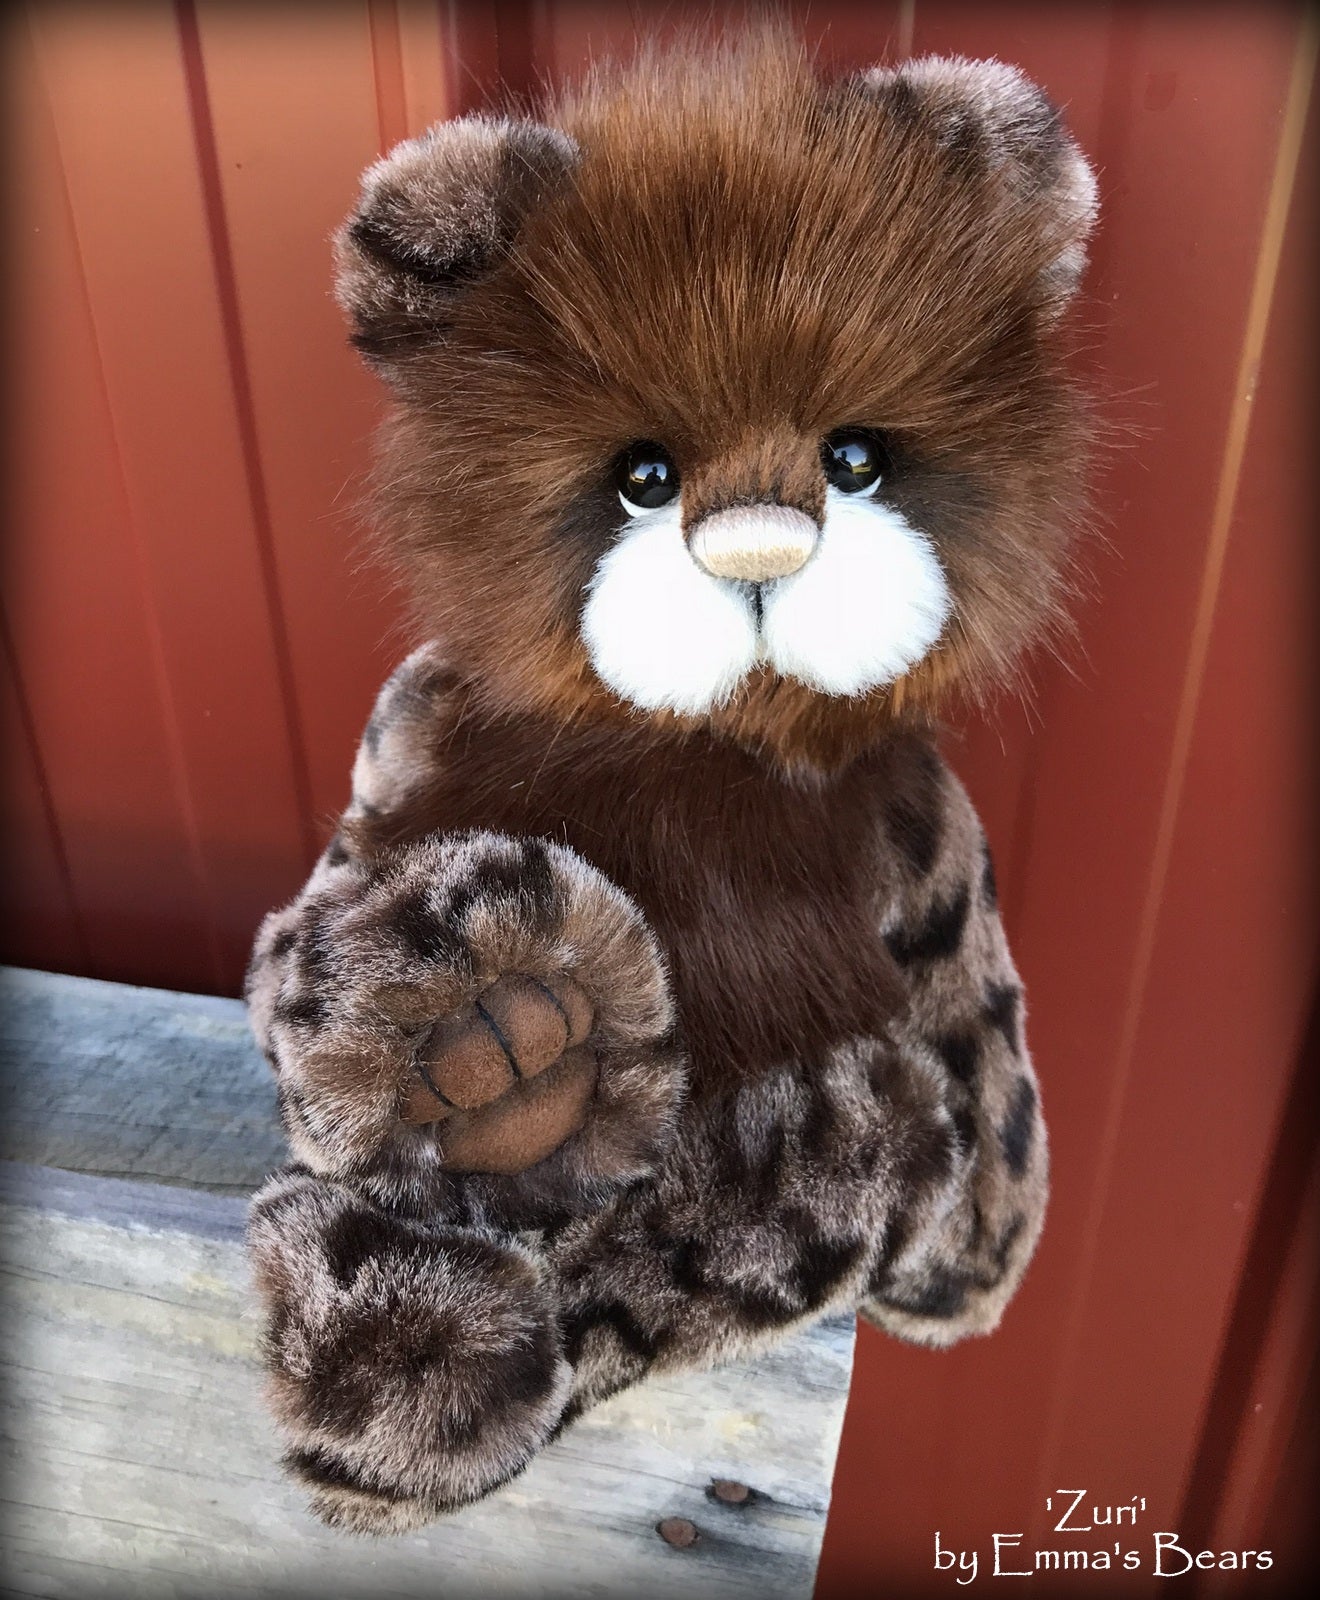 Zuri - 13" Tissavel faux fur artist bear by Emma's Bears - OOAK